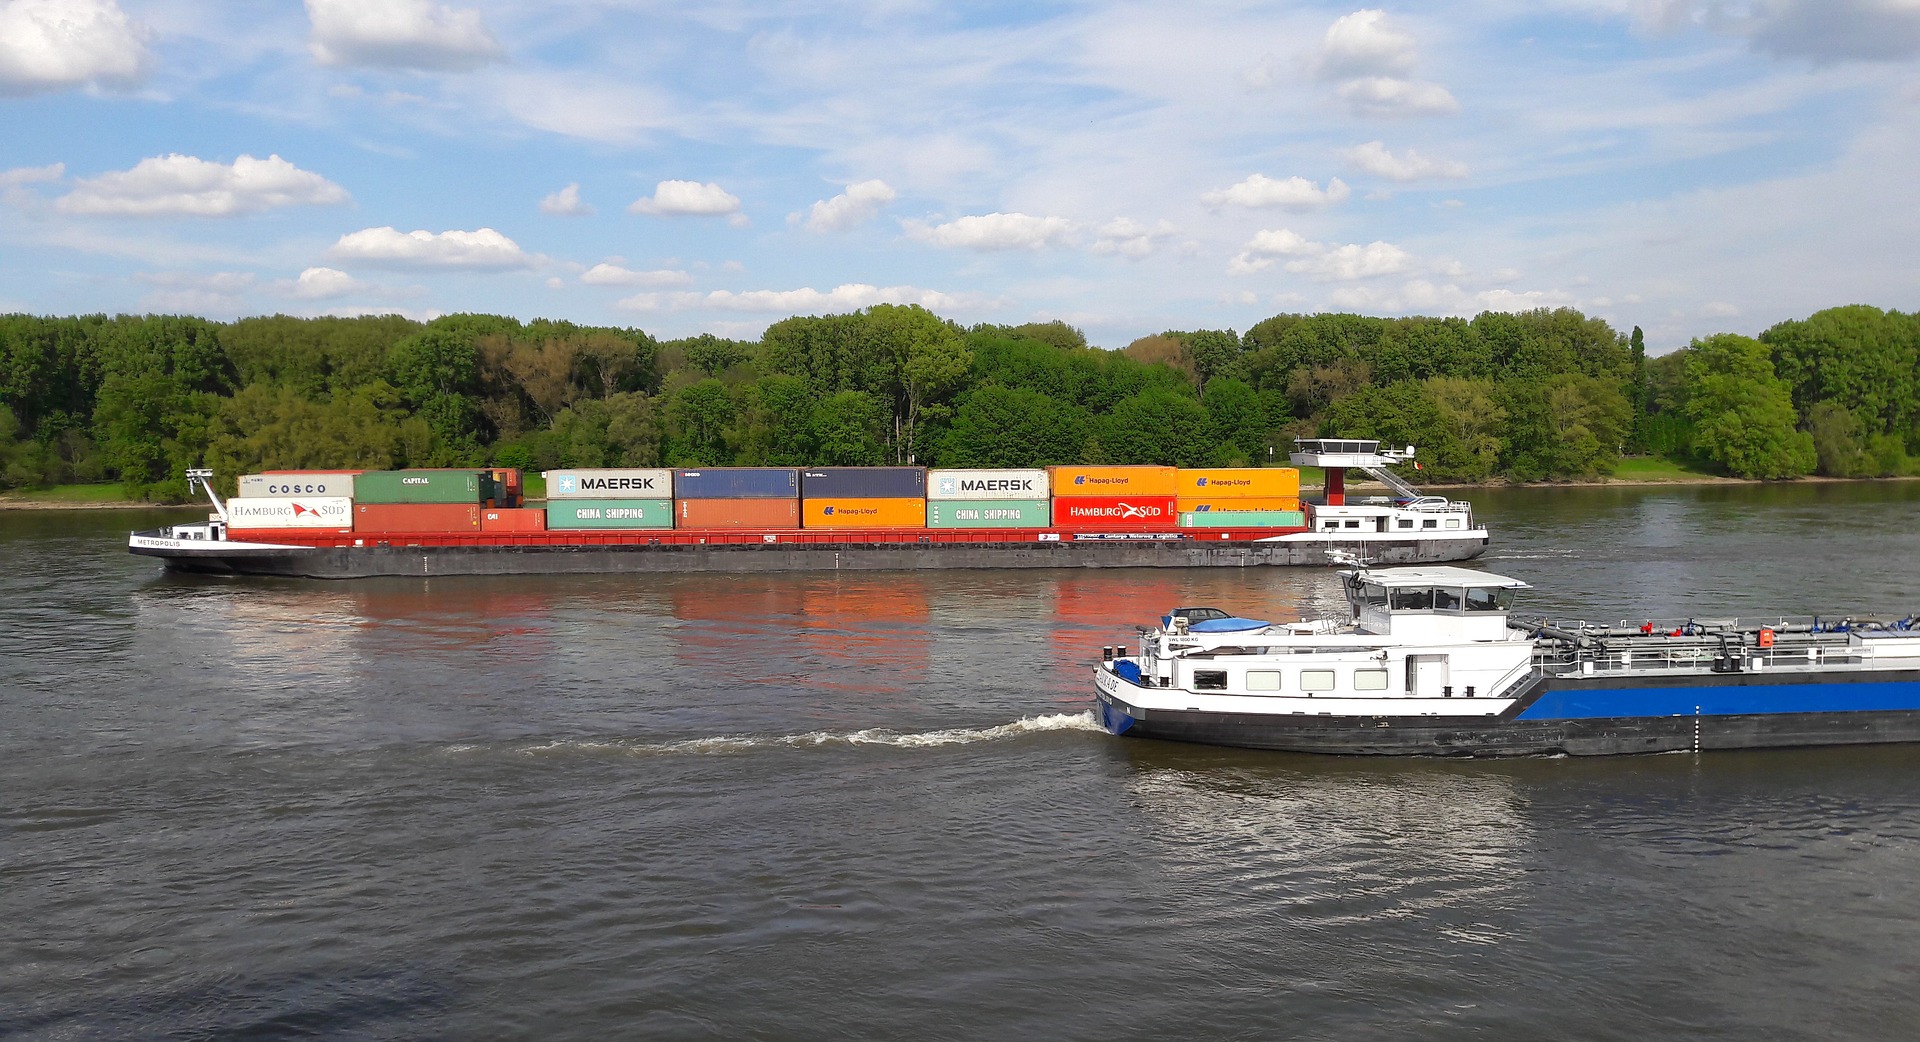 Die Binnenschifffahrt auf dem Rhein ist ein wichtiger Wirtschaftsfaktor für die Region. (Foto: Pixabay)